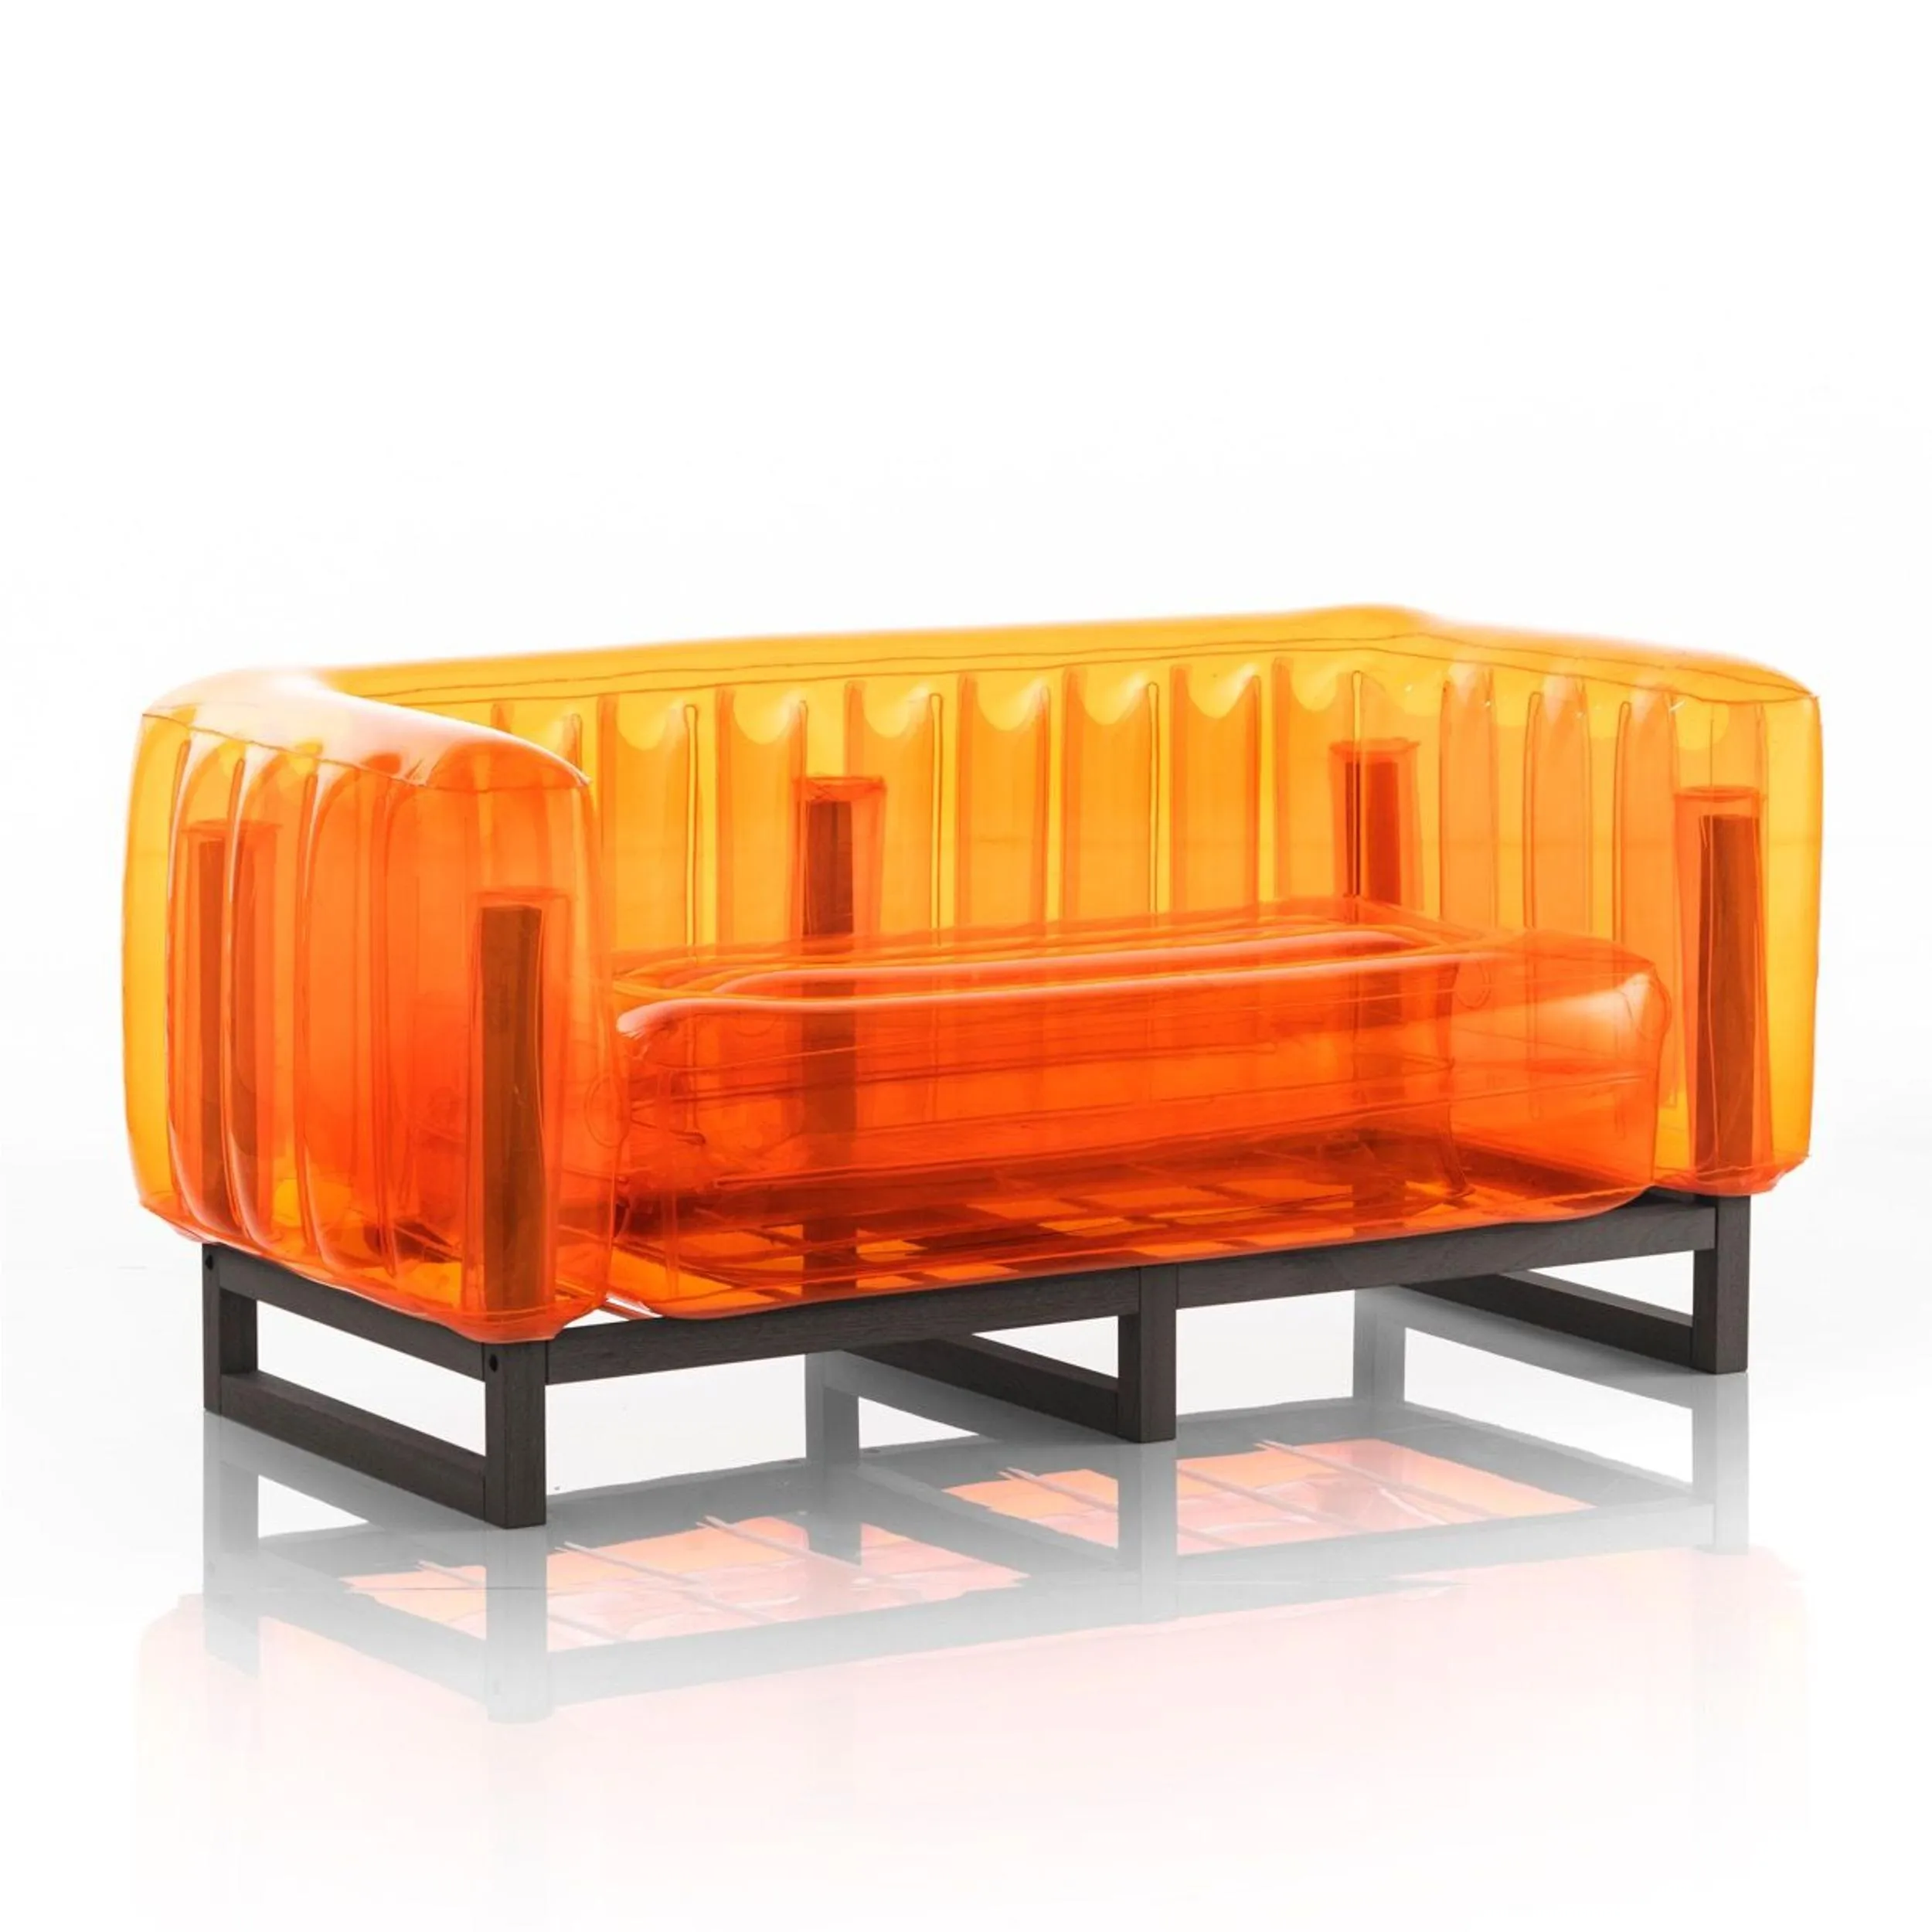 divano Yomi eko struttura in legno nero, dimensioni 76x151xH69 cm peso 14,8 kg, seduta gonfiabile in TPU colore arancio